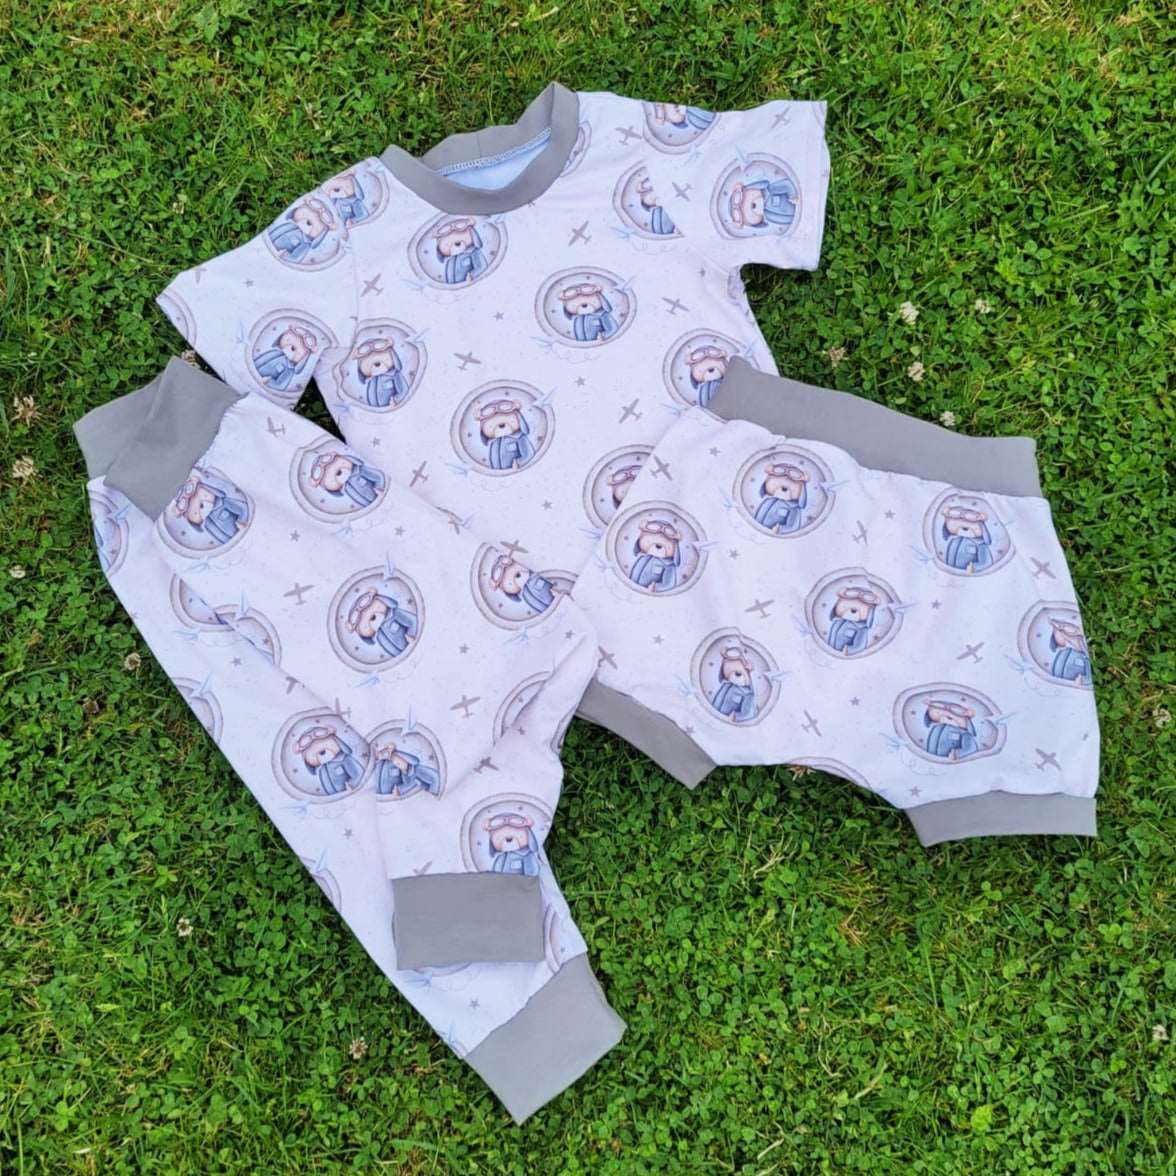 Child's handmade Jelly shorts - jersey handmade shorts